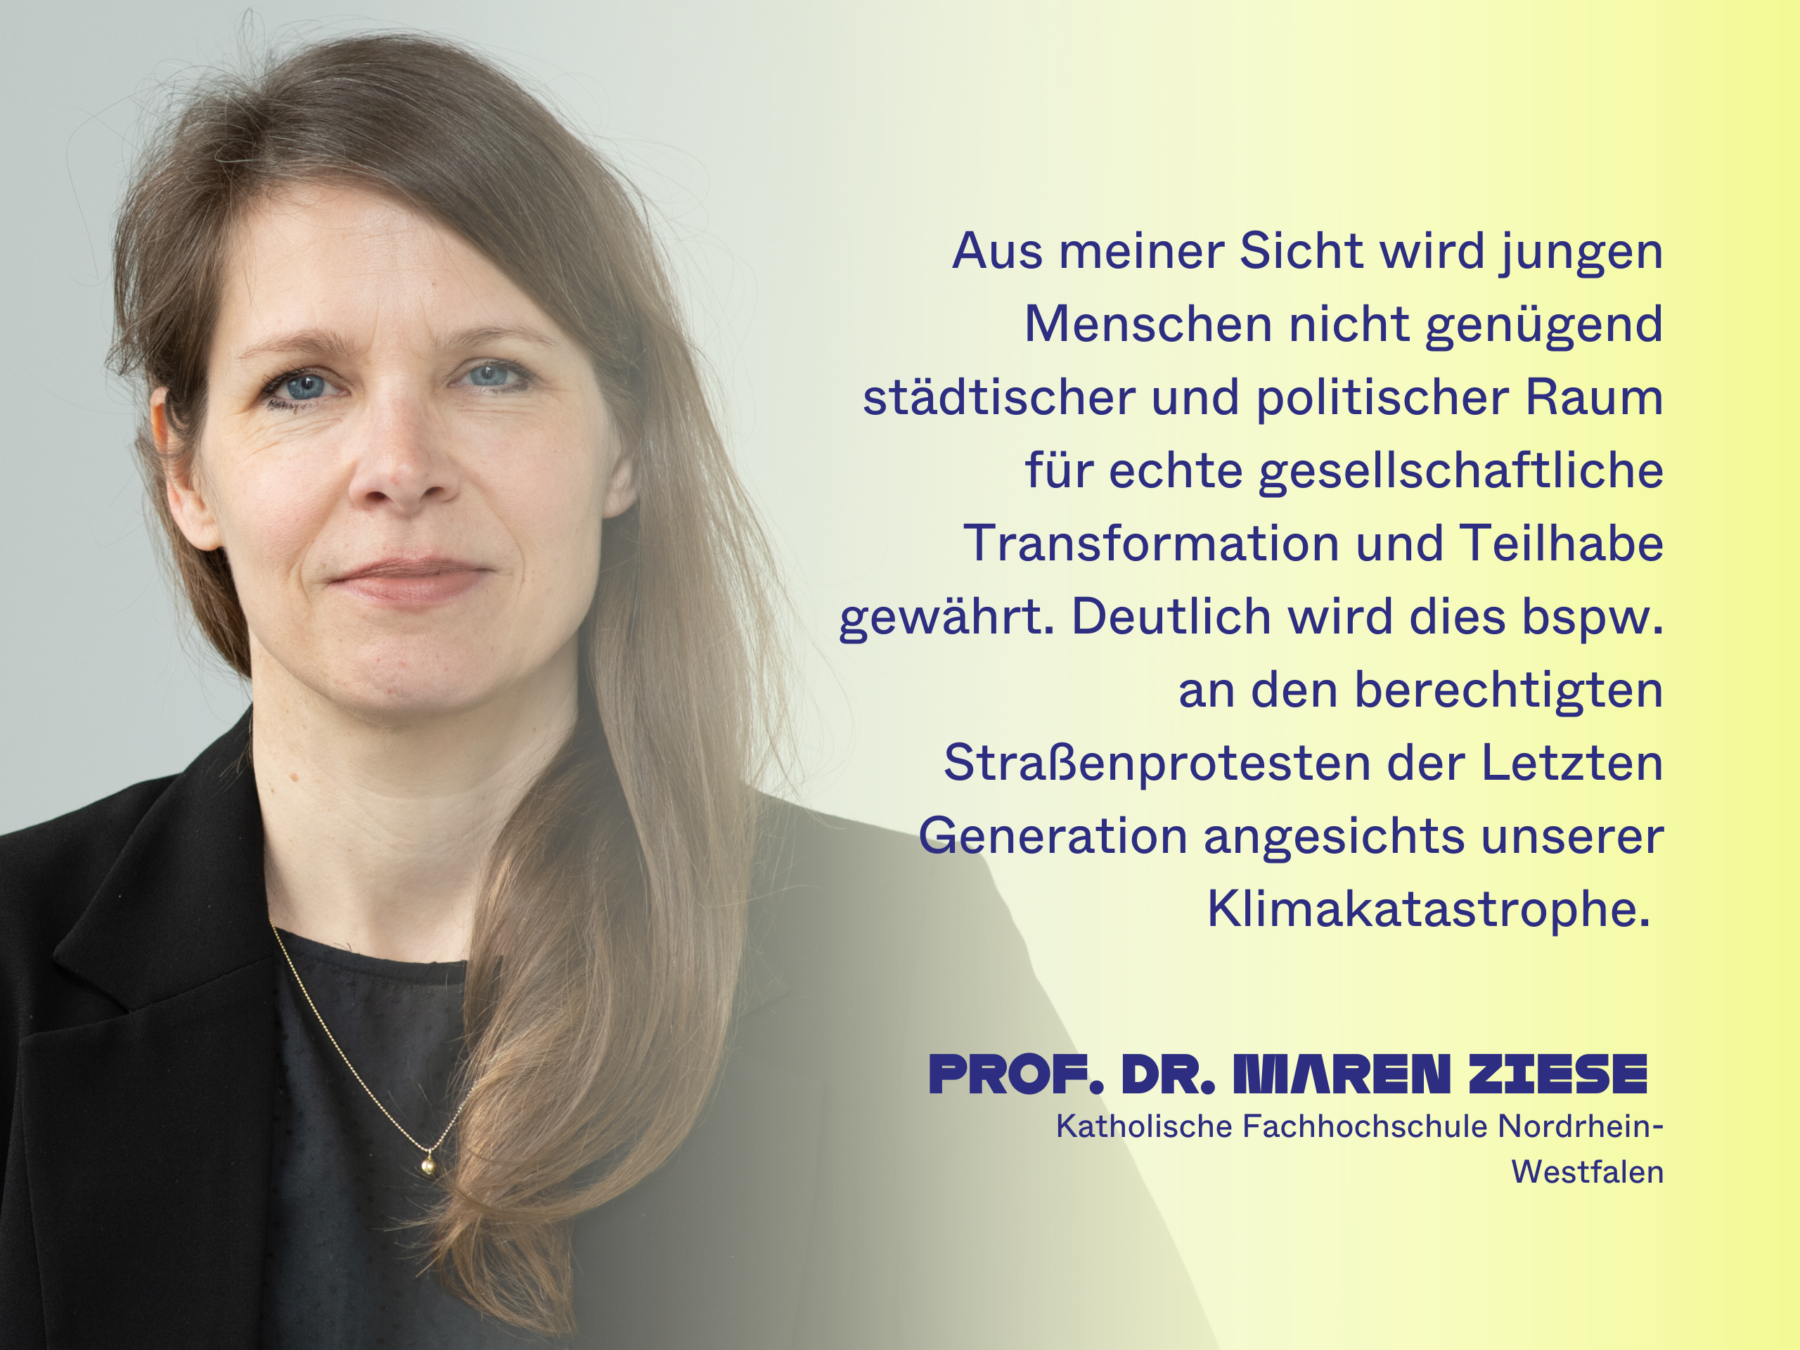 Prof. Dr. Maren Ziese